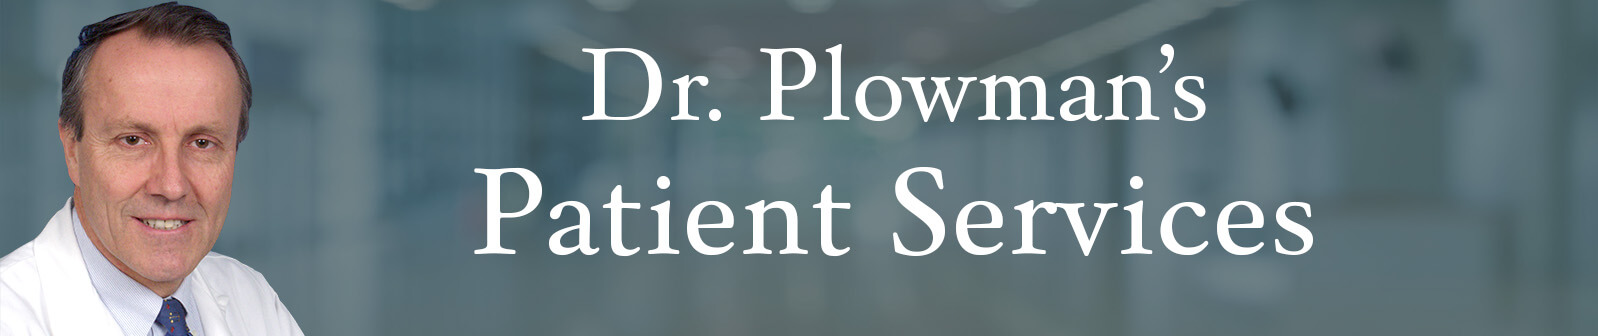 Dr Plowman's Patient Services